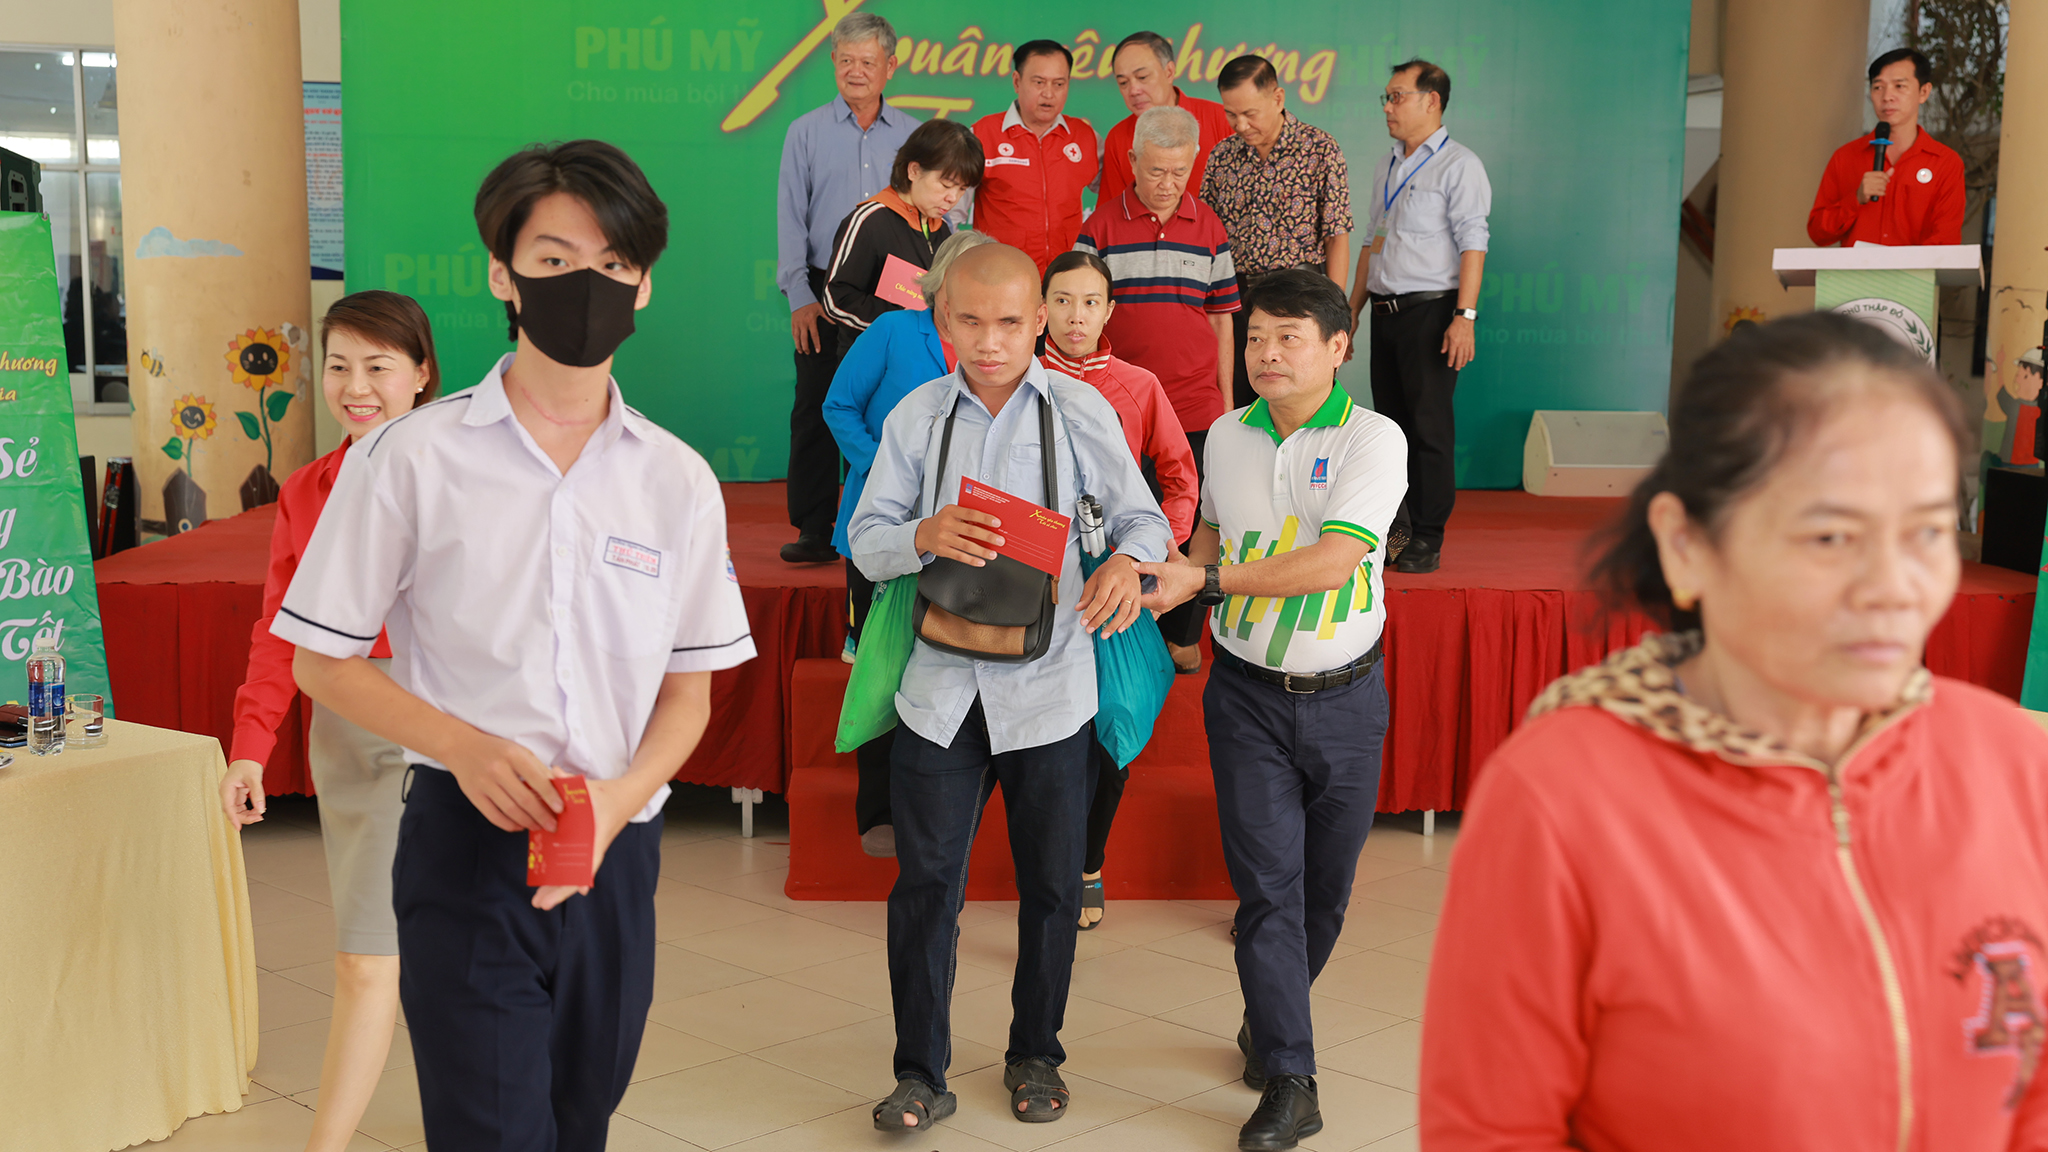 
PVFCCo tổ chức chương trình Tết vì người nghèo tại 100 xã phường cả nước - Ảnh 2.